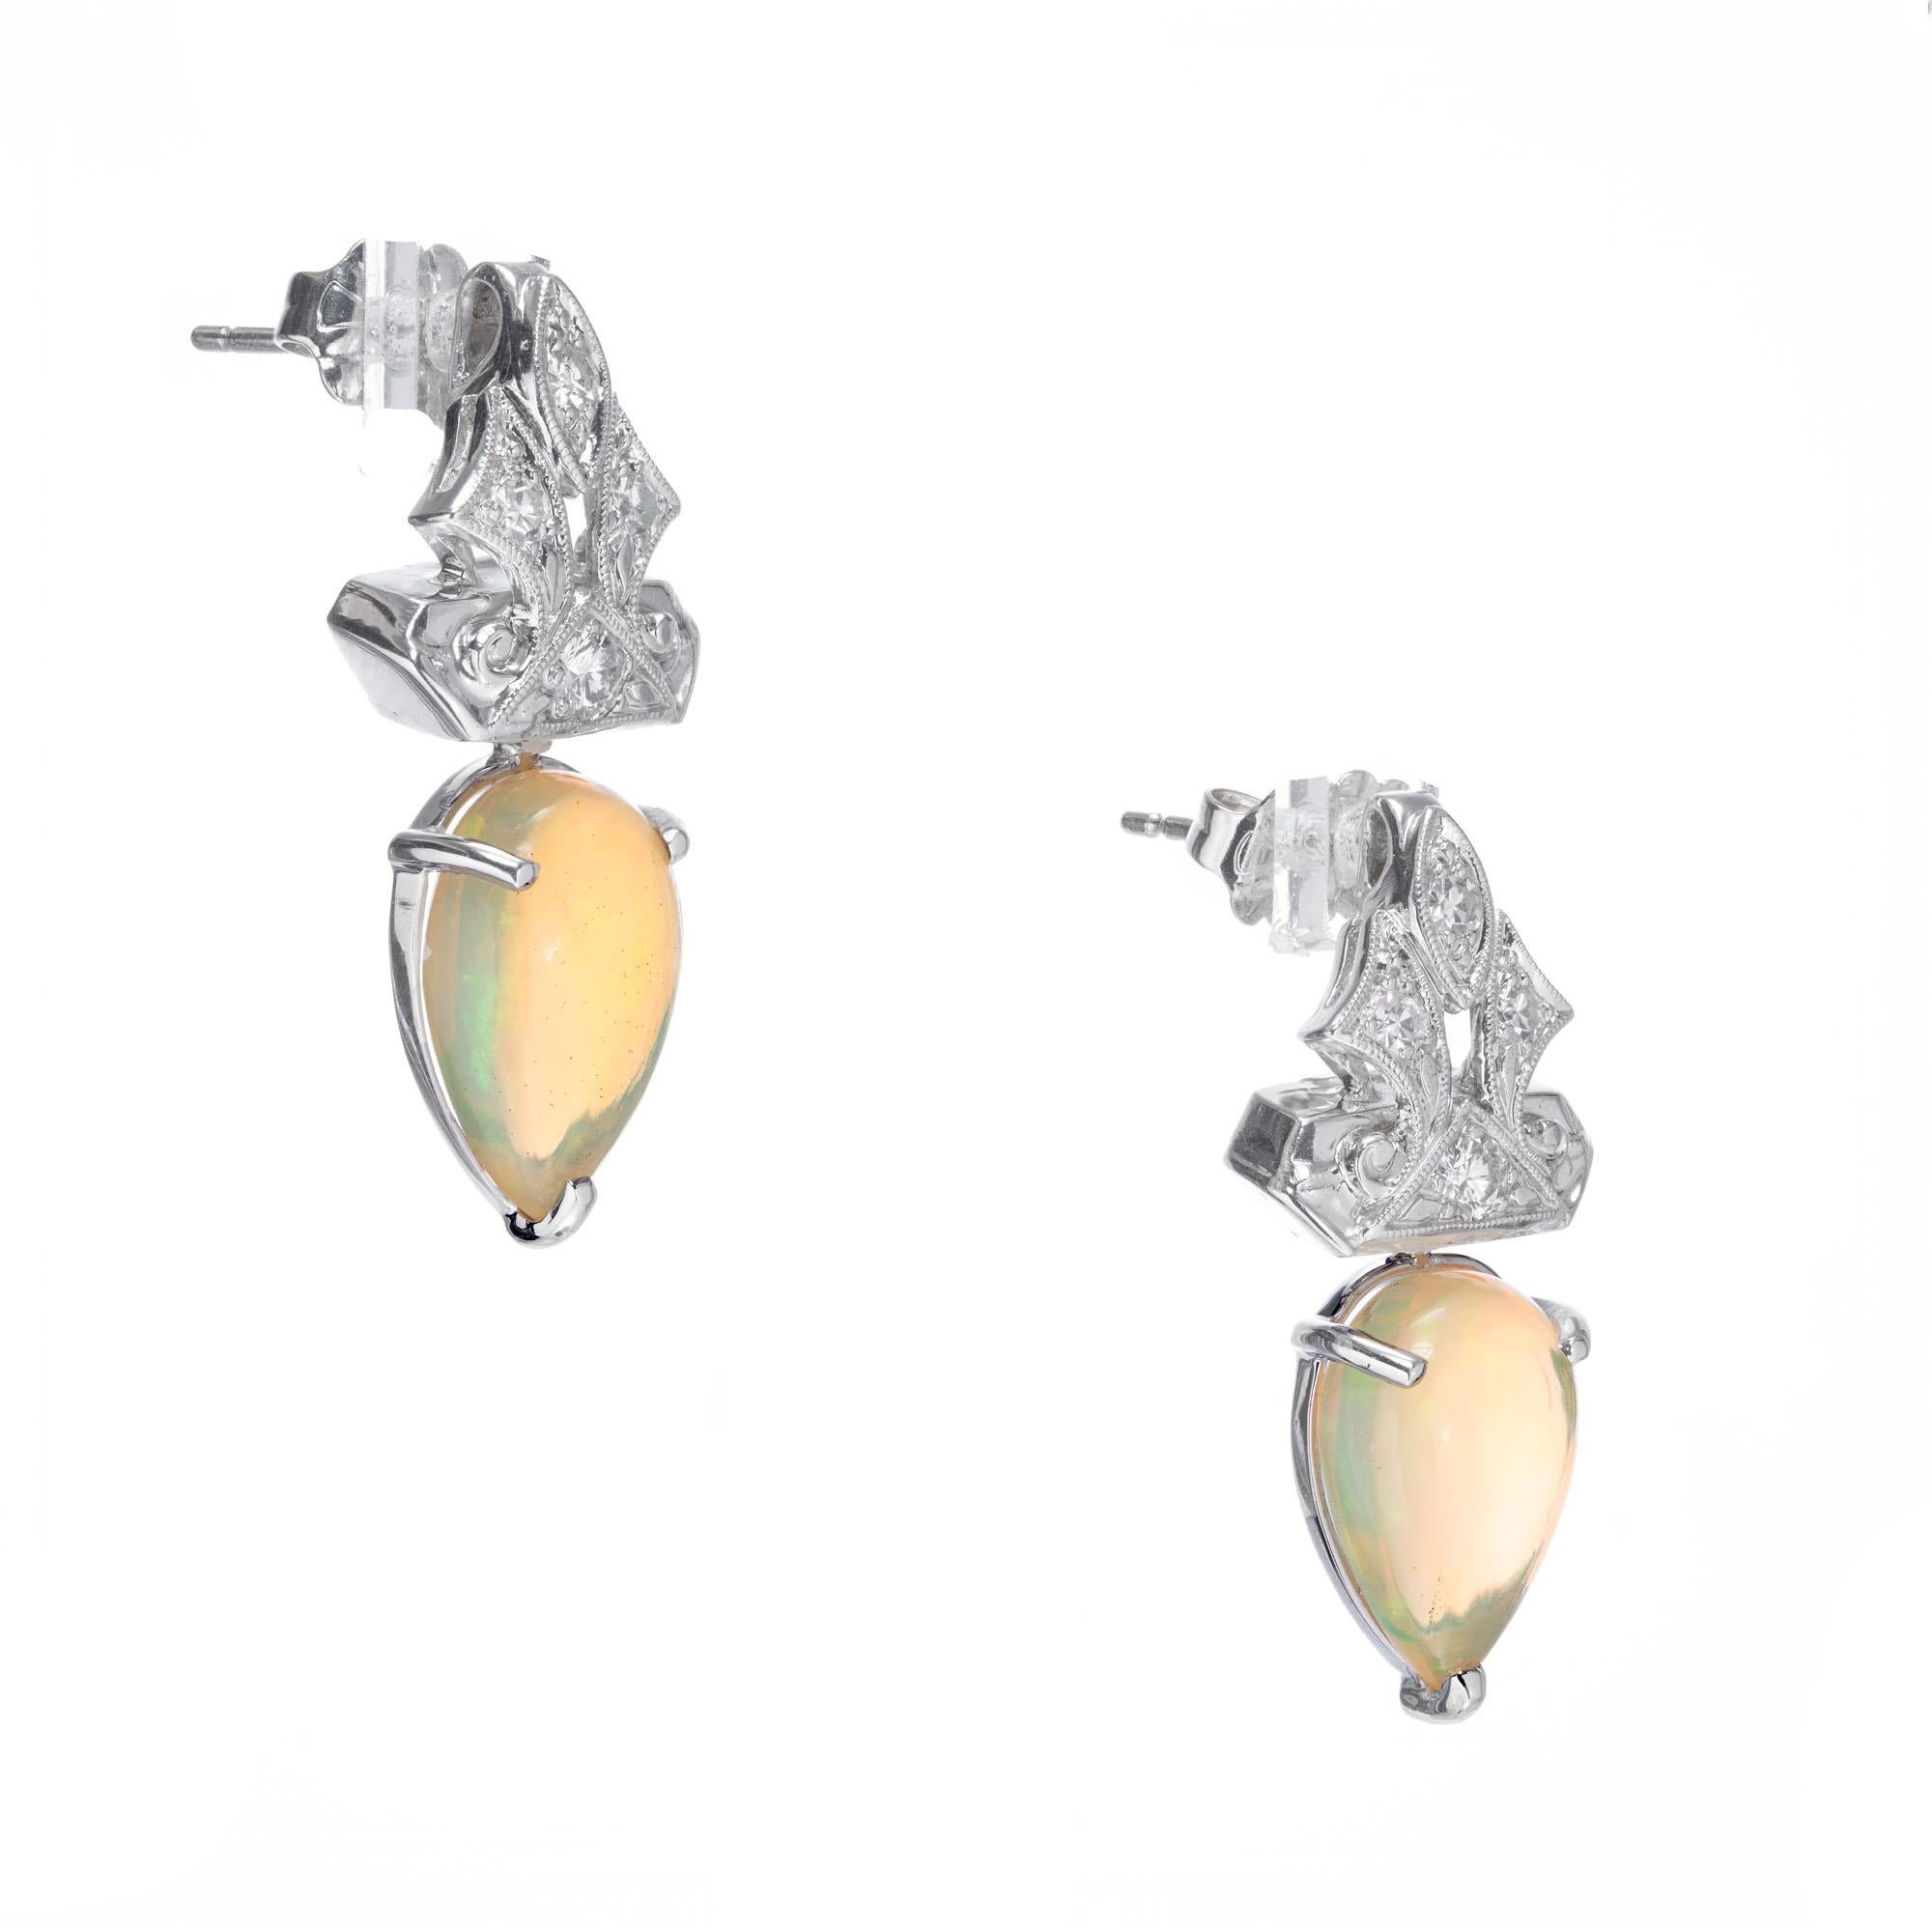 Opal- und Diamant-Ohrringe. 2 durchscheinende birnenförmige Opale mit 8 runden Diamanten als Akzent. Hergestellt in der Werkstatt von Peter Suchy. 

2 blau-grüne und orangefarbene Blitz-Opale als Perlen-Cabochon, Gesamtgewicht ca. 3,51cts
8